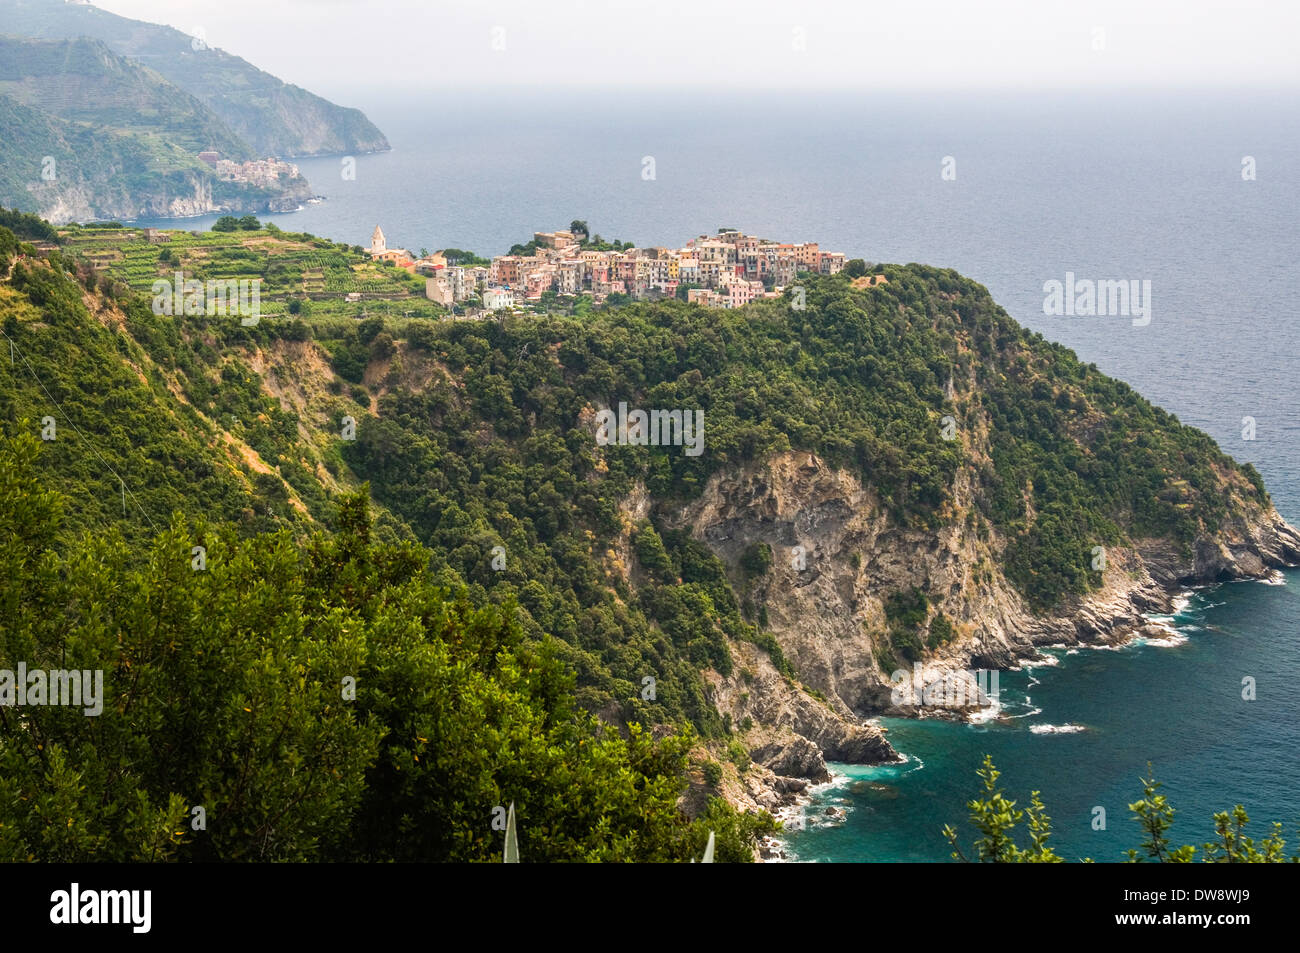 Looking back to Corniglia from the Sentiero Azzurro, Cinque Terre, Italy Stock Photo